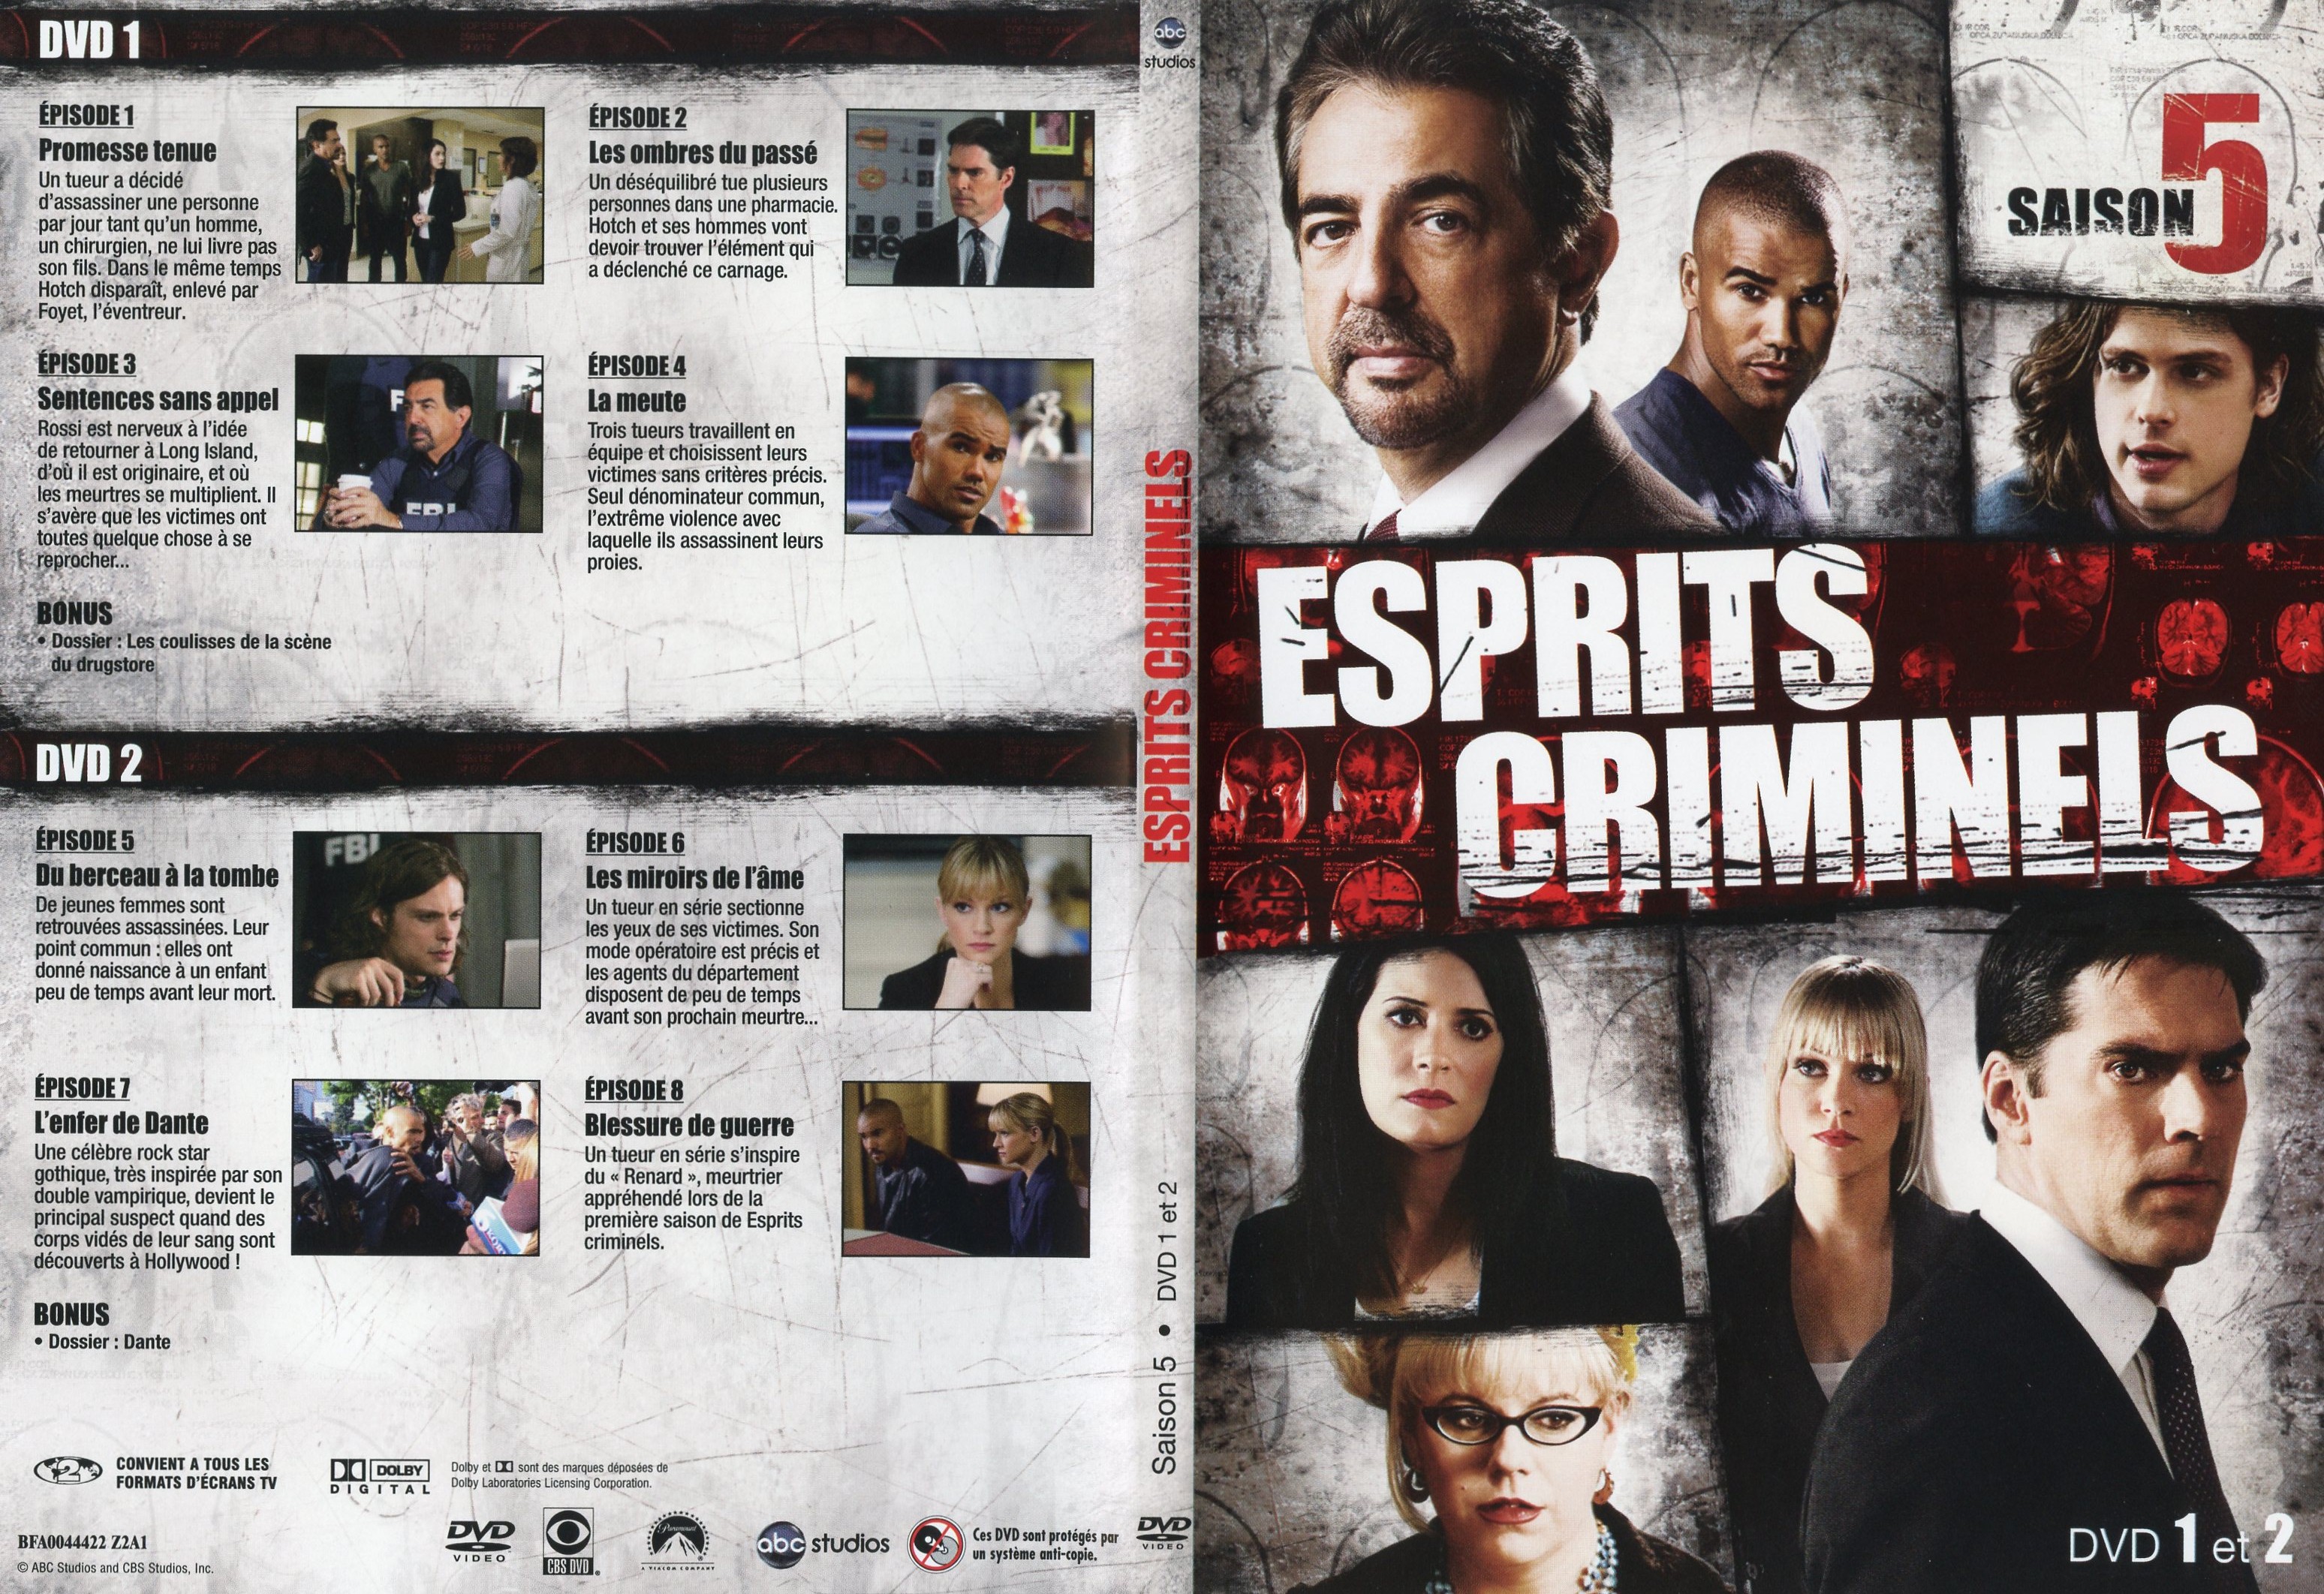 Jaquette DVD Esprits criminels Saison 5 DVD 1